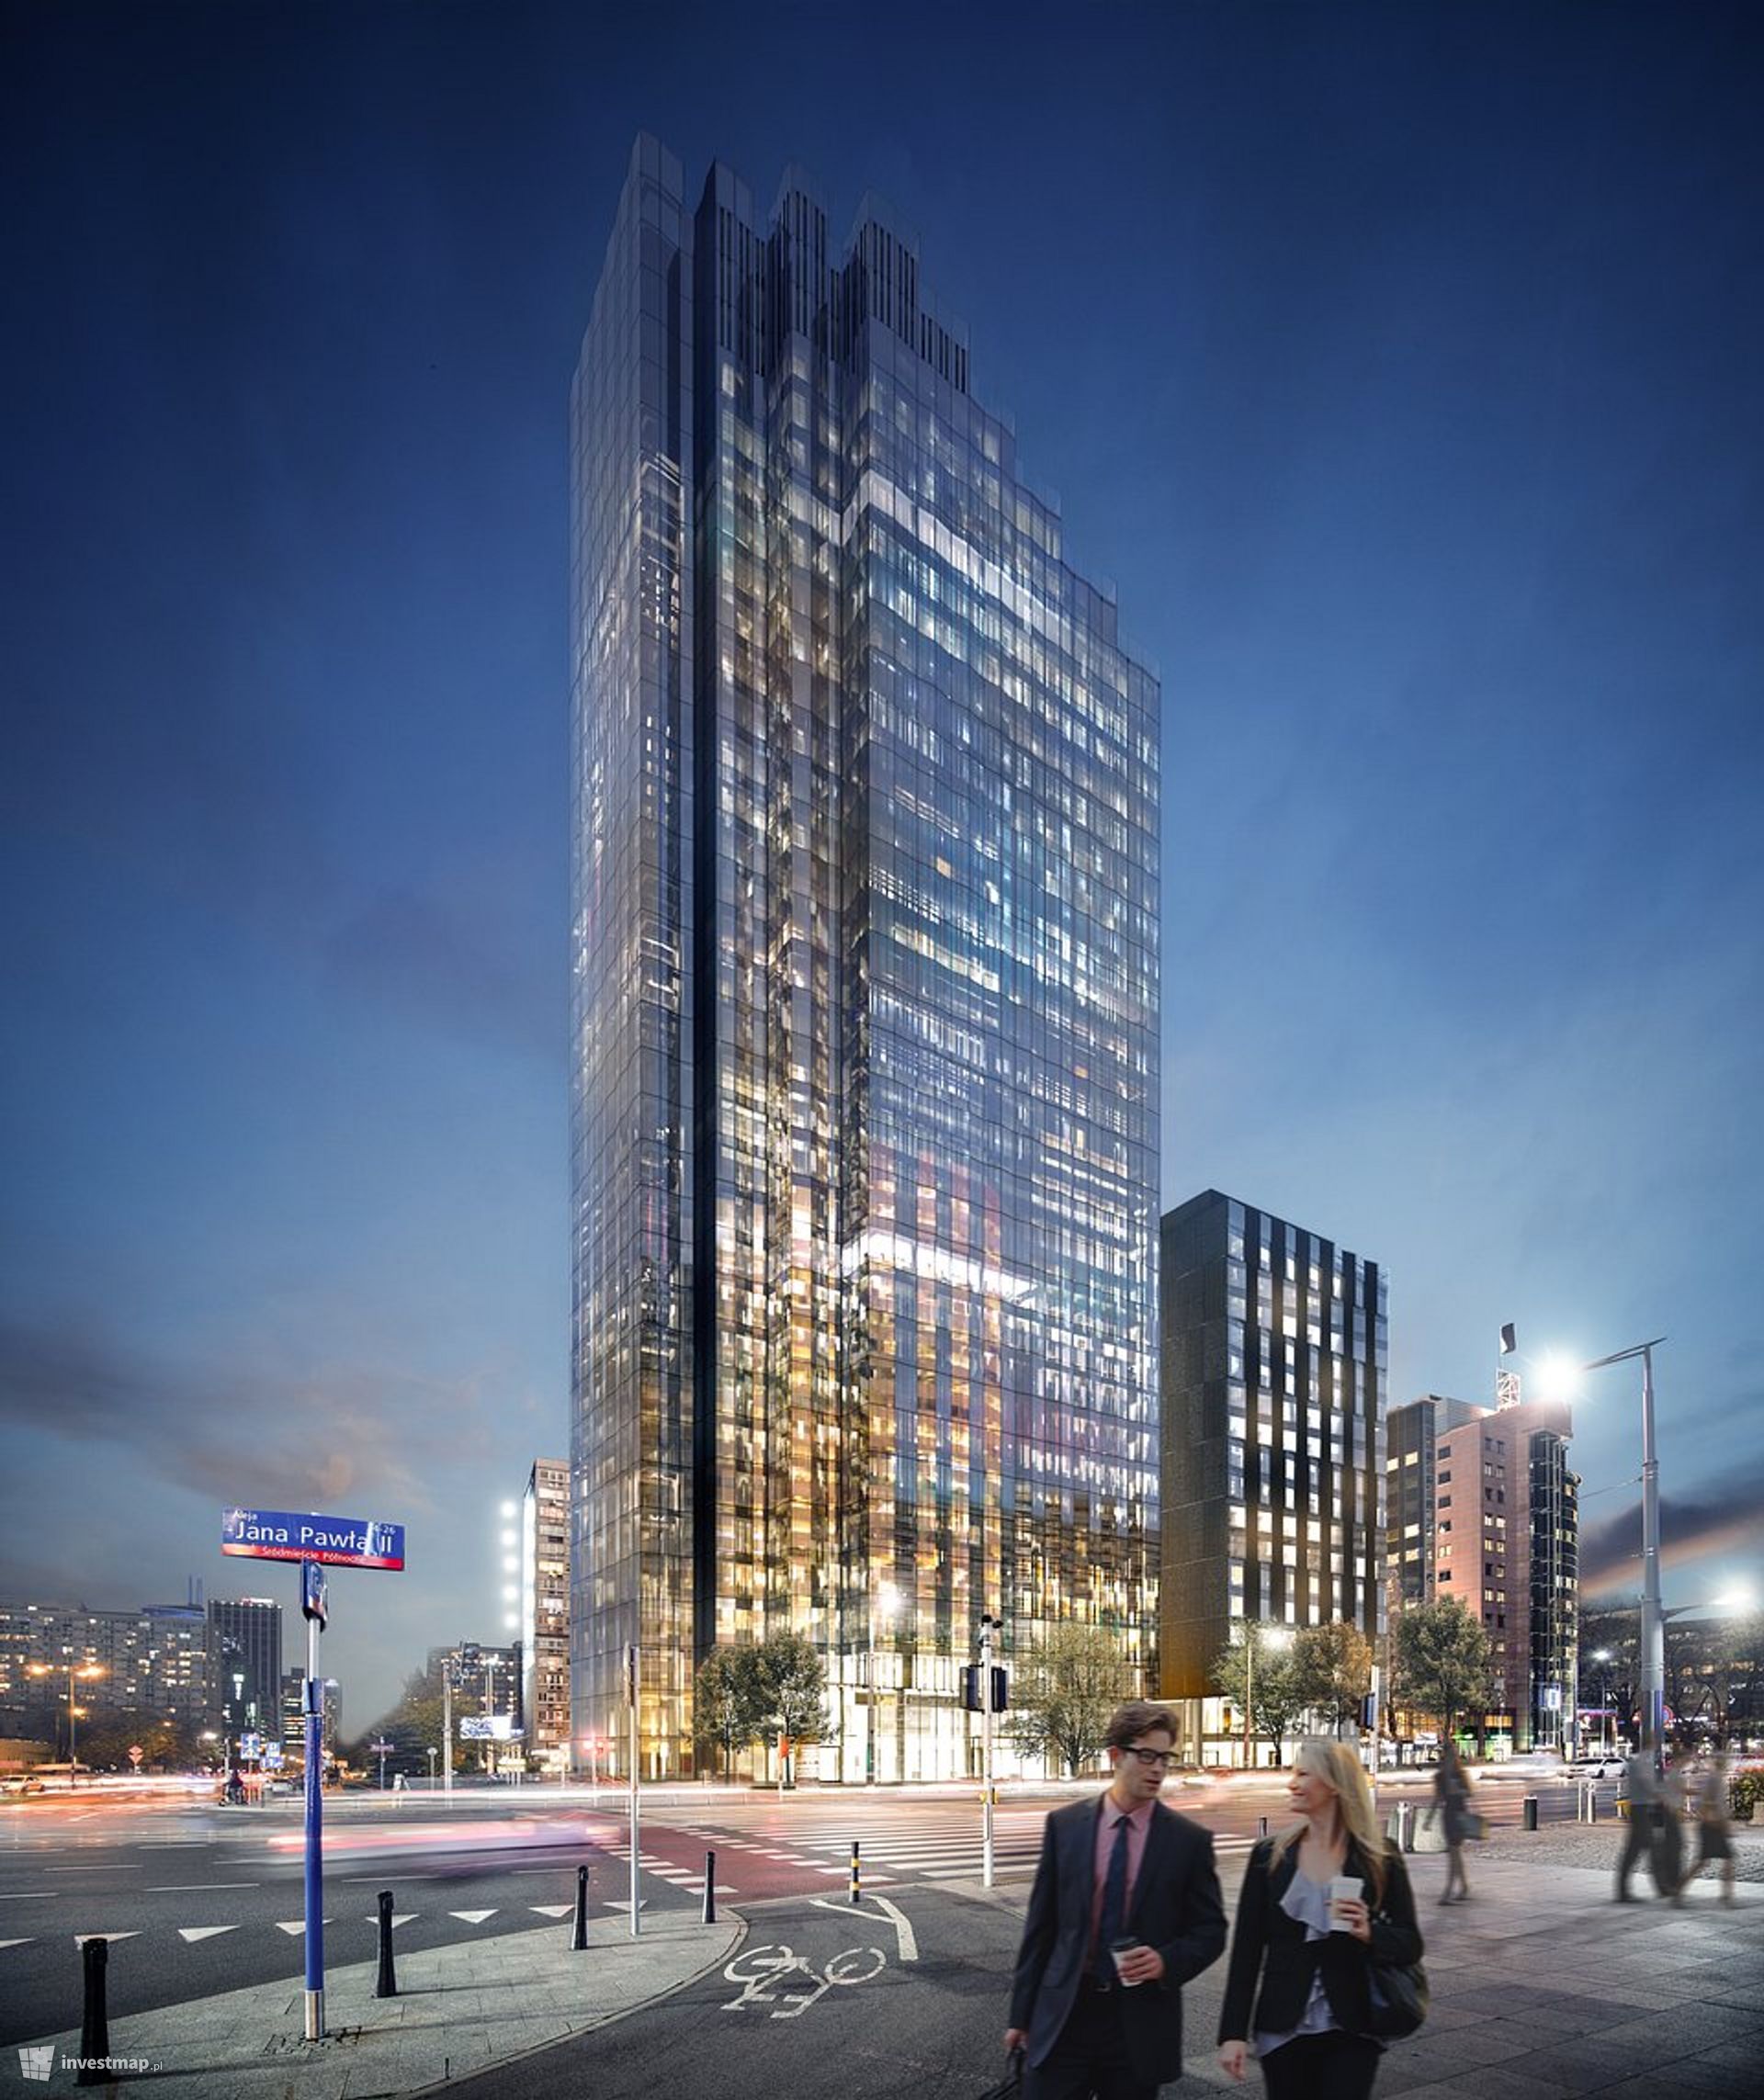 W centrum Warszawy powstaje nowy kompleks biurowo-hotelowy Upper One ze 130-metrowym wieżowcem 